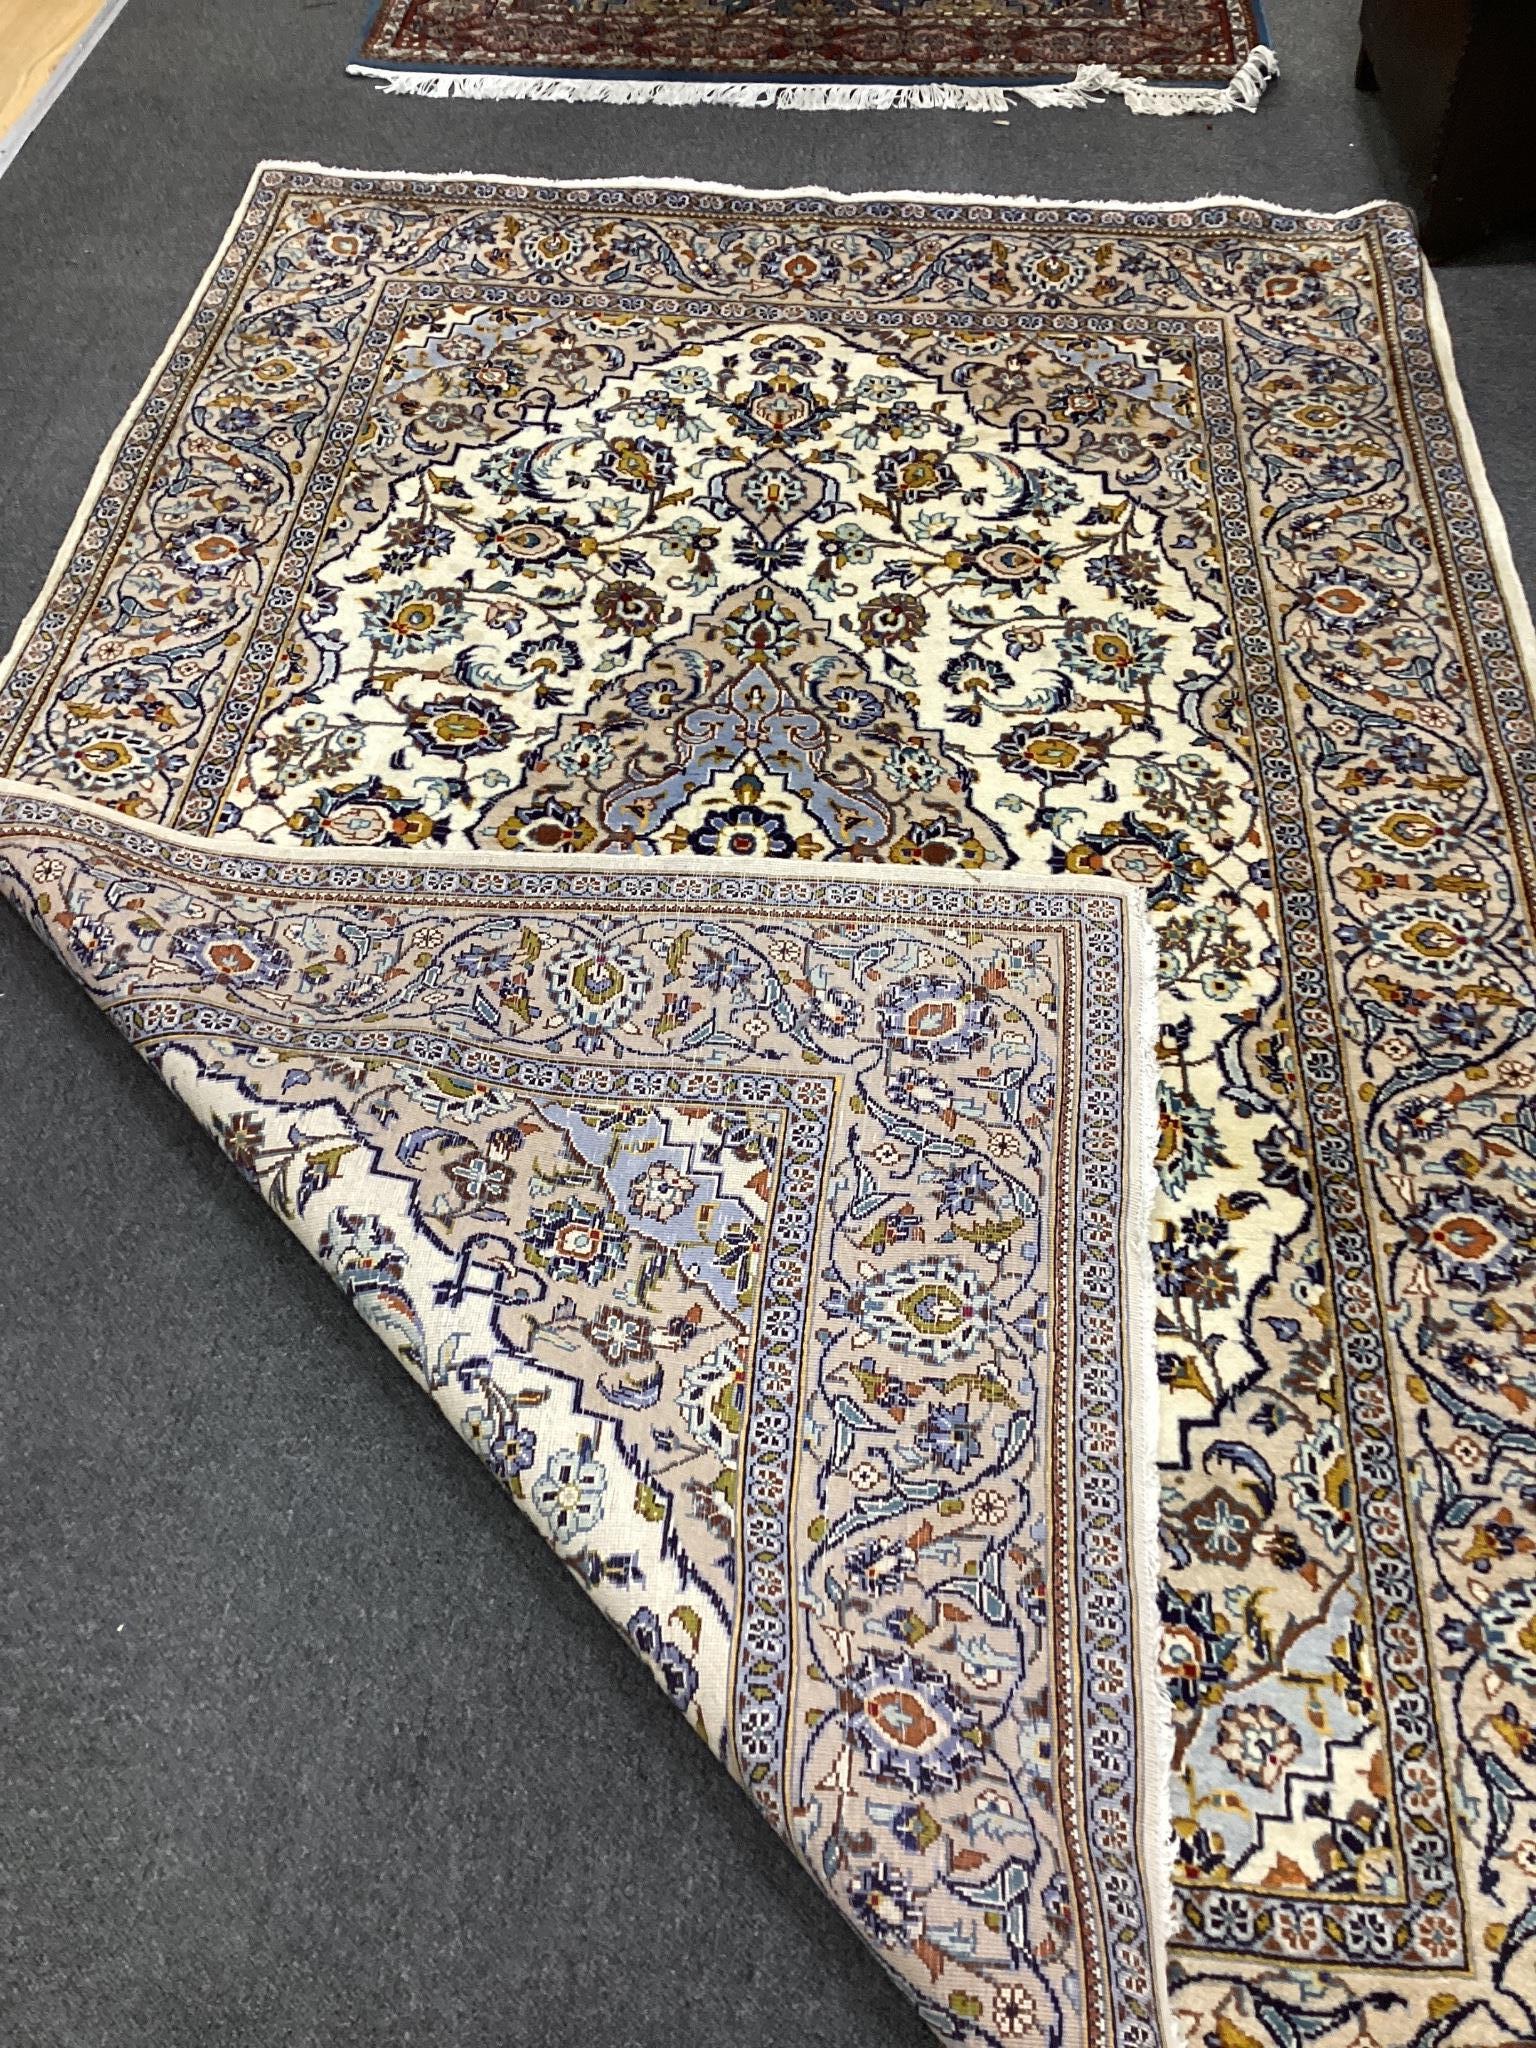 A modern Kashan ivory ground rug, 220cm x 145cm